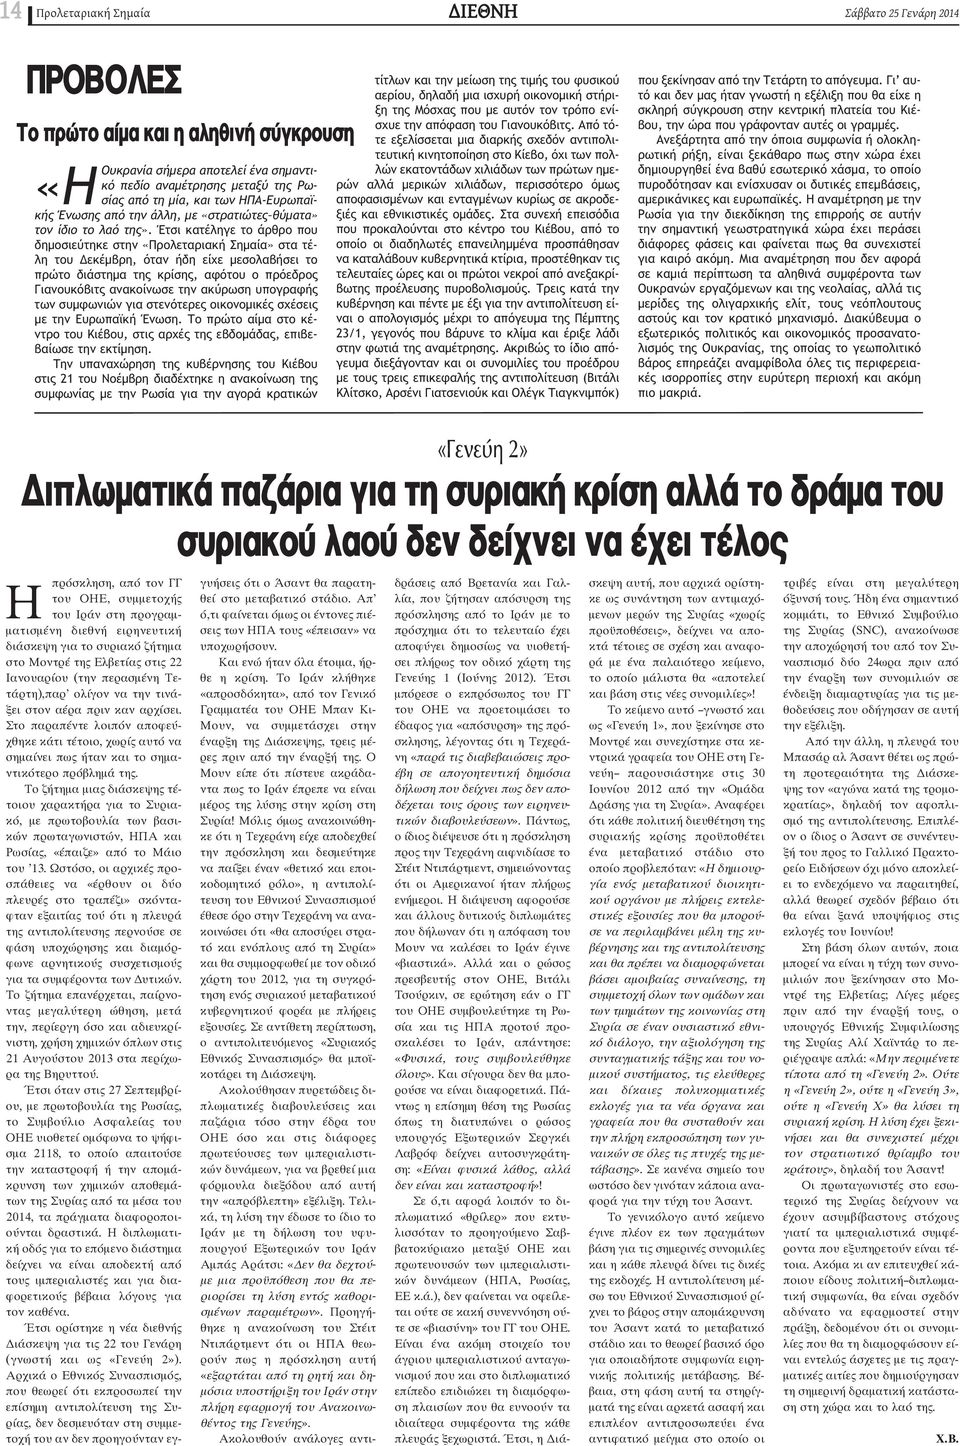 Έτσι κατέληγε το άρθρο που δημοσιεύτηκε στην «Προλεταριακή Σημαία» στα τέλη του εκέμβρη, όταν ήδη είχε μεσολαβήσει το πρώτο διάστημα της κρίσης, αφότου ο πρόεδρος Γιανουκόβιτς ανακοίνωσε την ακύρωση